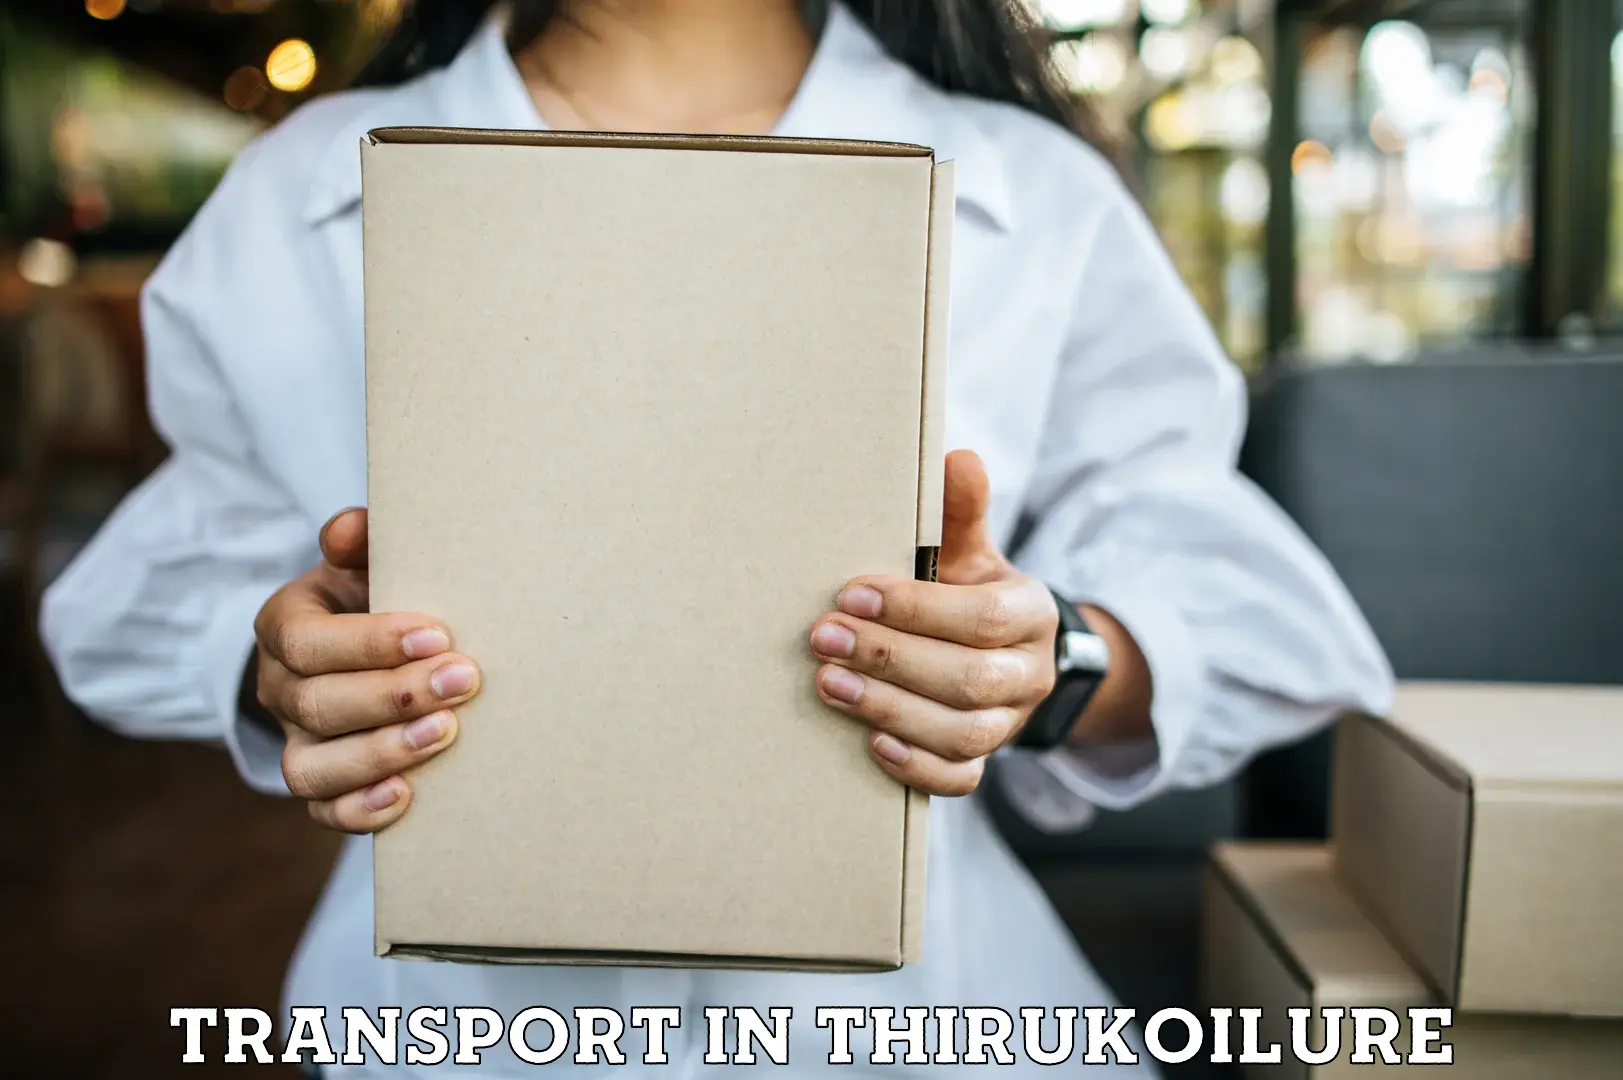 Online transport service in Thirukoilure